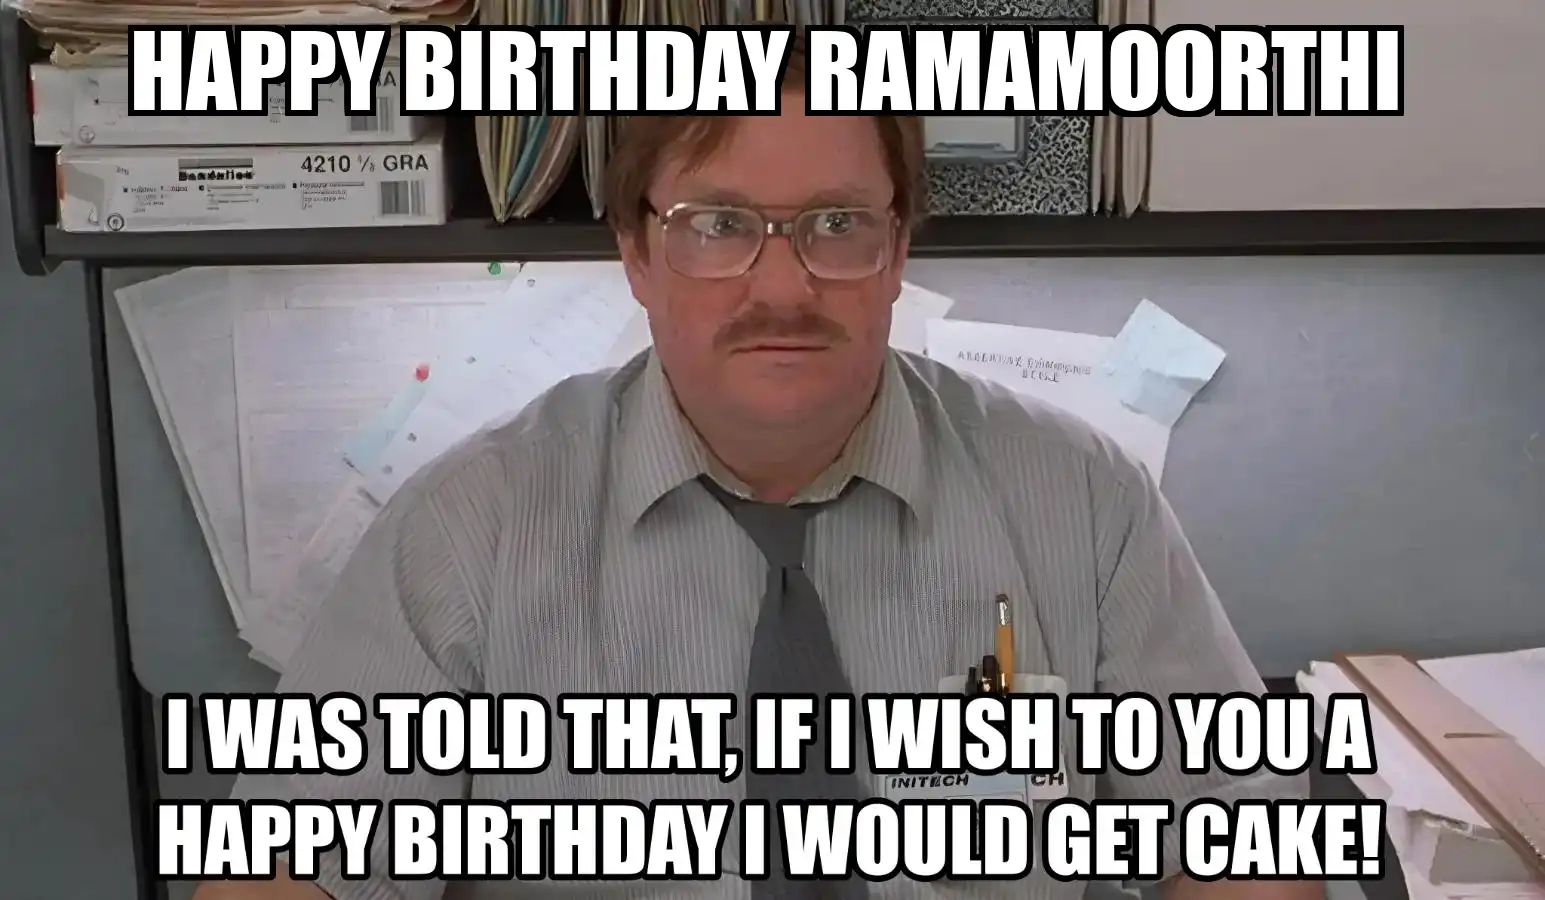 Happy Birthday Ramamoorthi I Would Get A Cake Meme